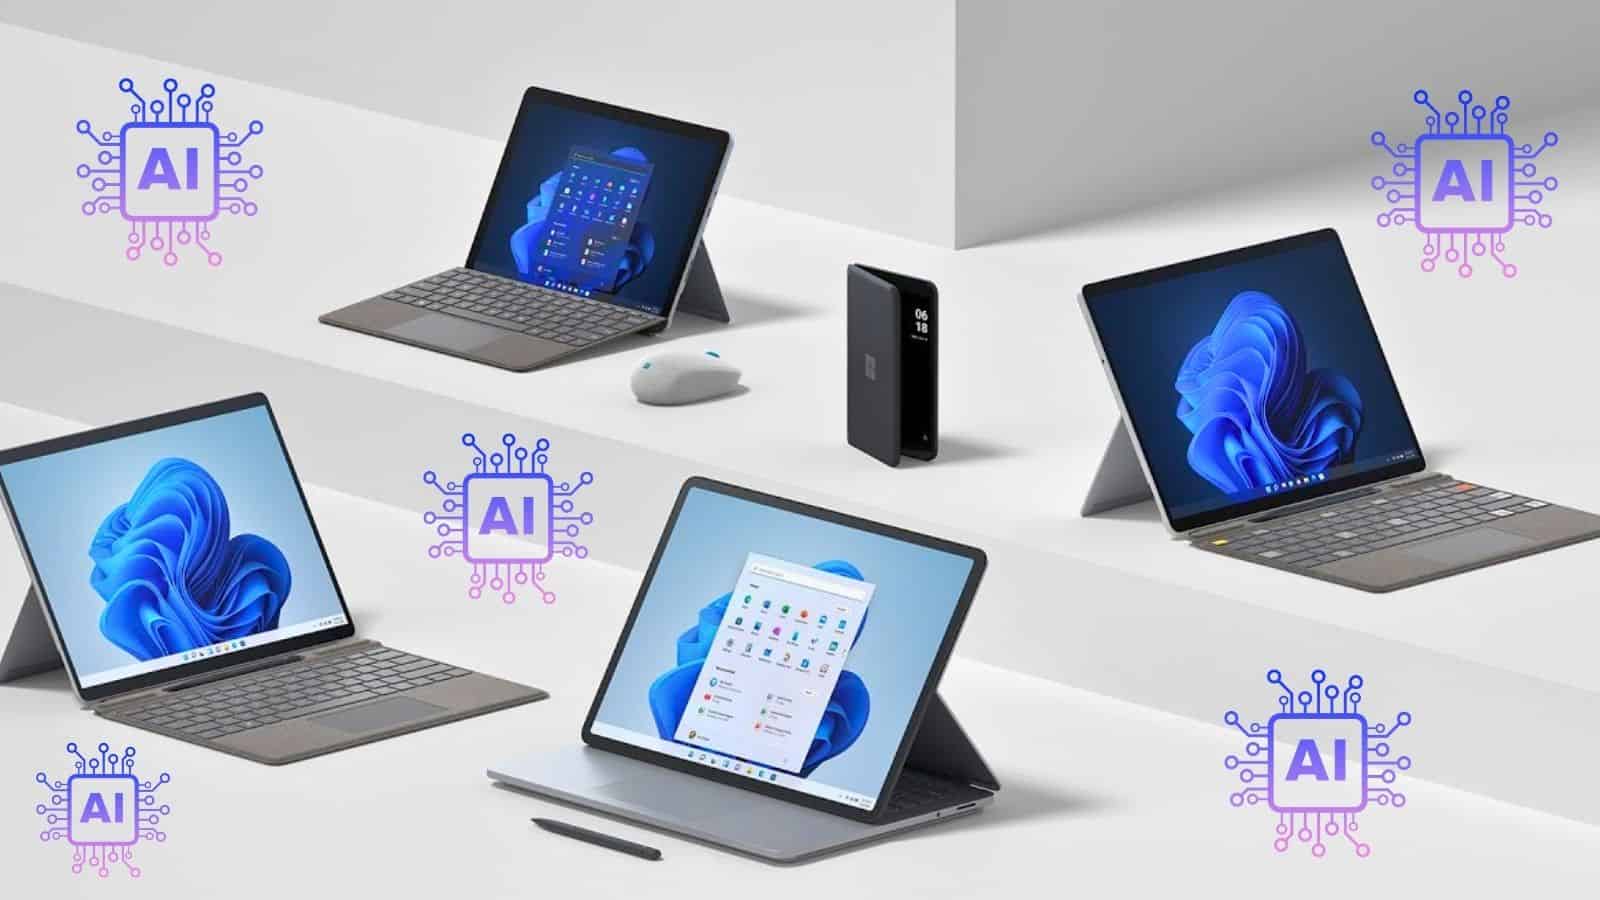 Microsoft e la progettazione dei dispositivi Surface: si punta sull'IA